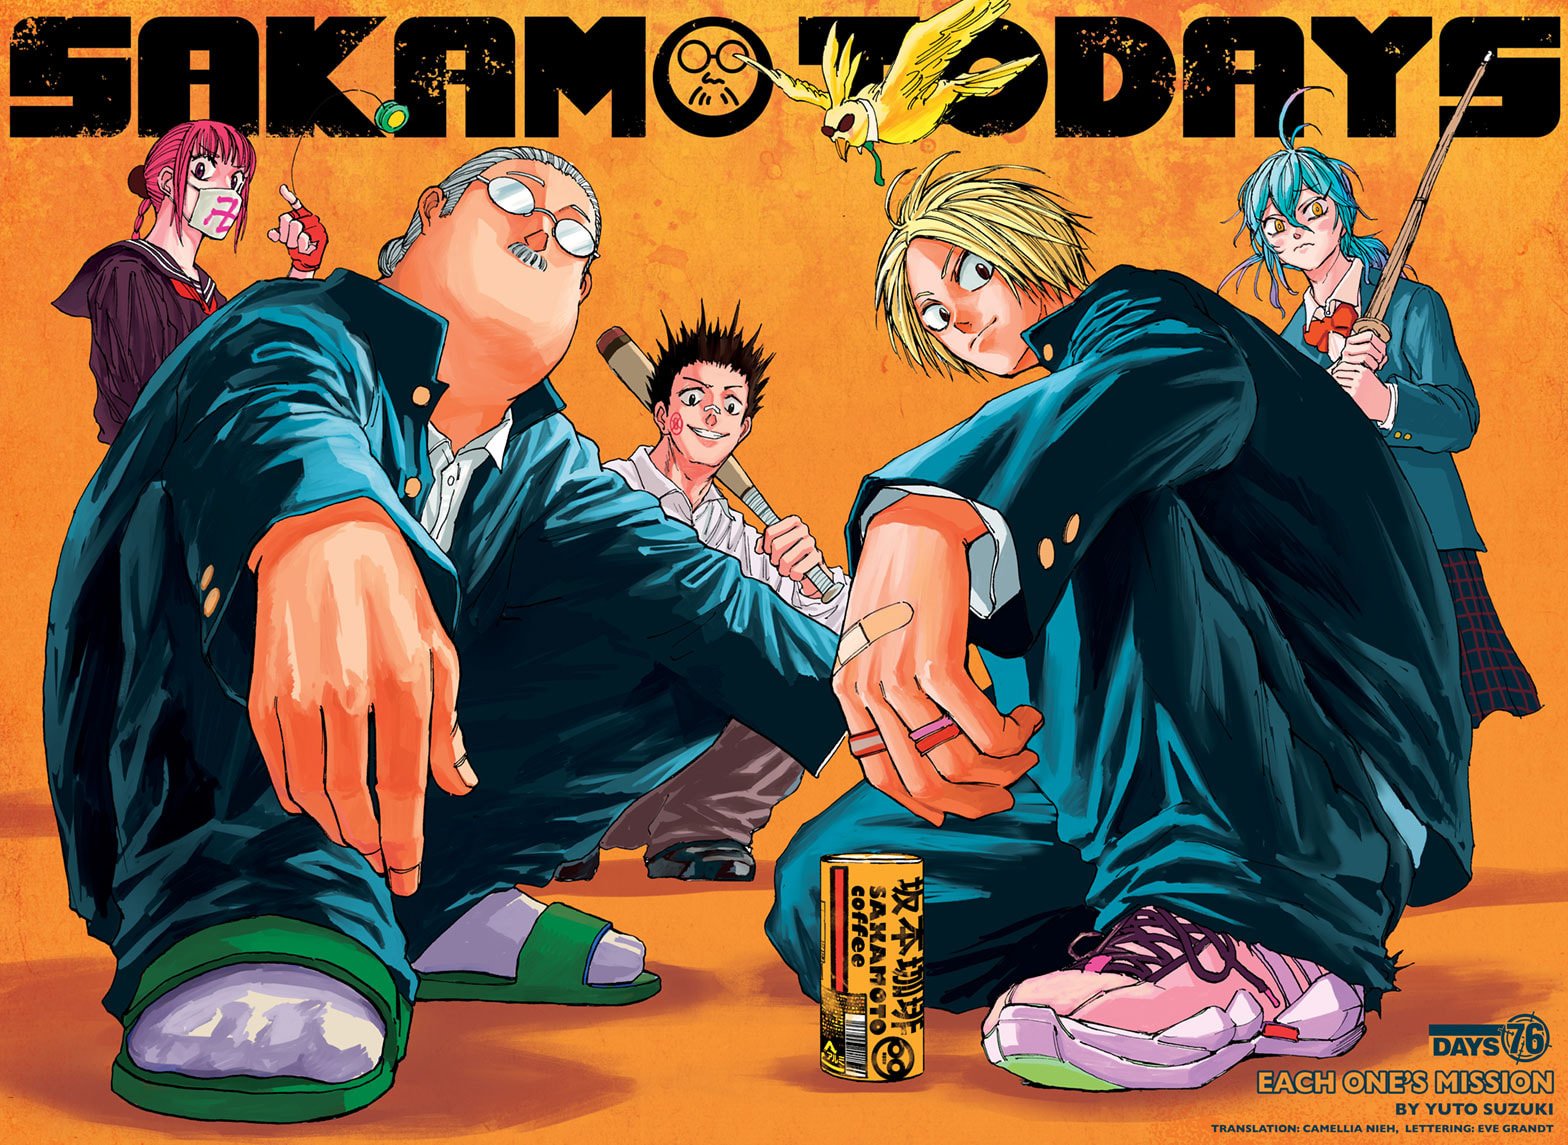 Sakamoto Days Chapter 76